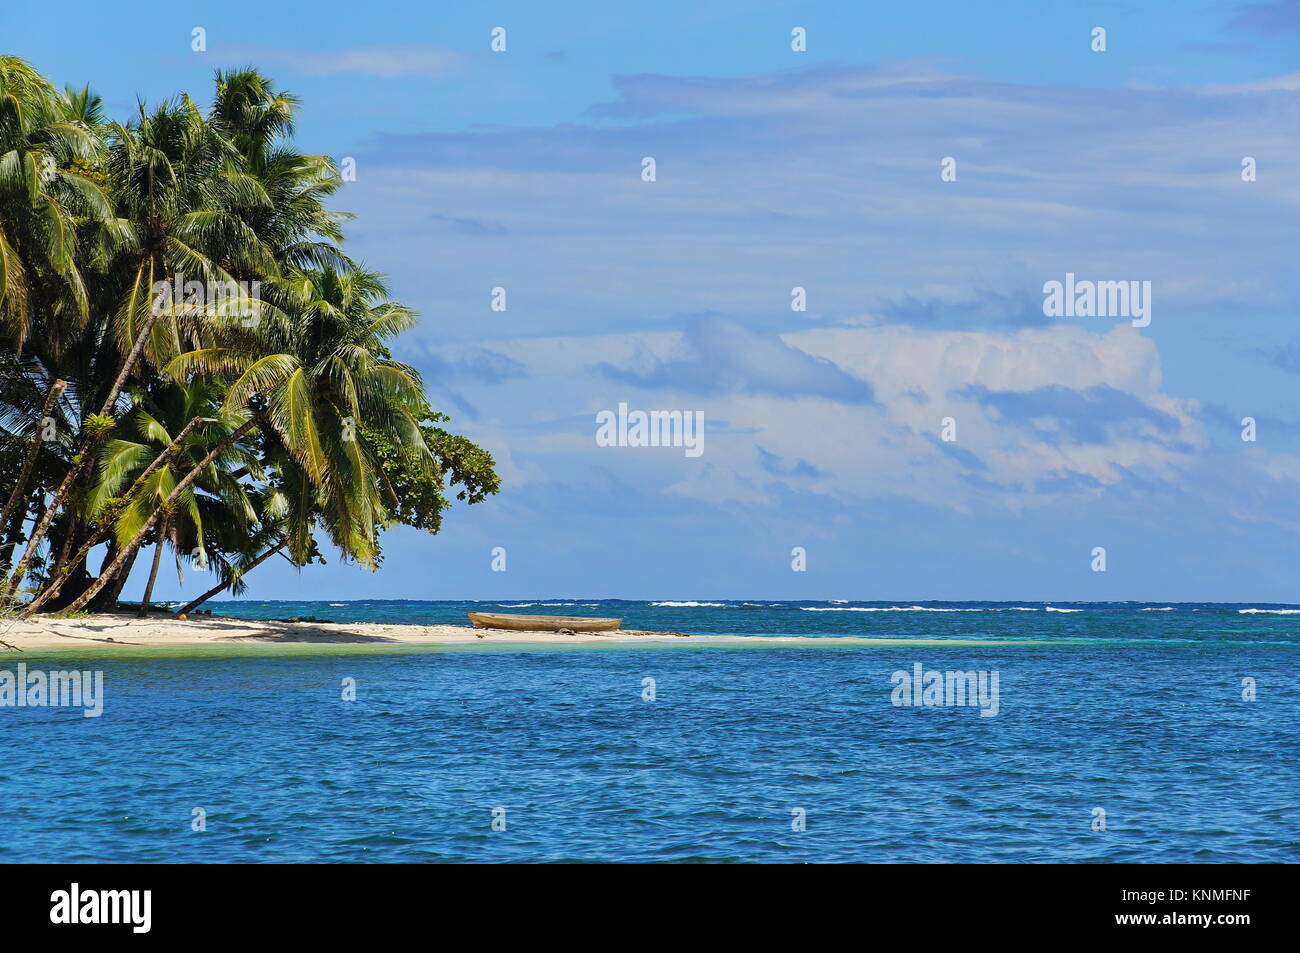 Île tropicale, s'appuyant des cocotiers et une pirogue en bois sur la plage, la mer des Caraïbes, Bocas del Toro, PANAMA, Amérique Centrale Banque D'Images